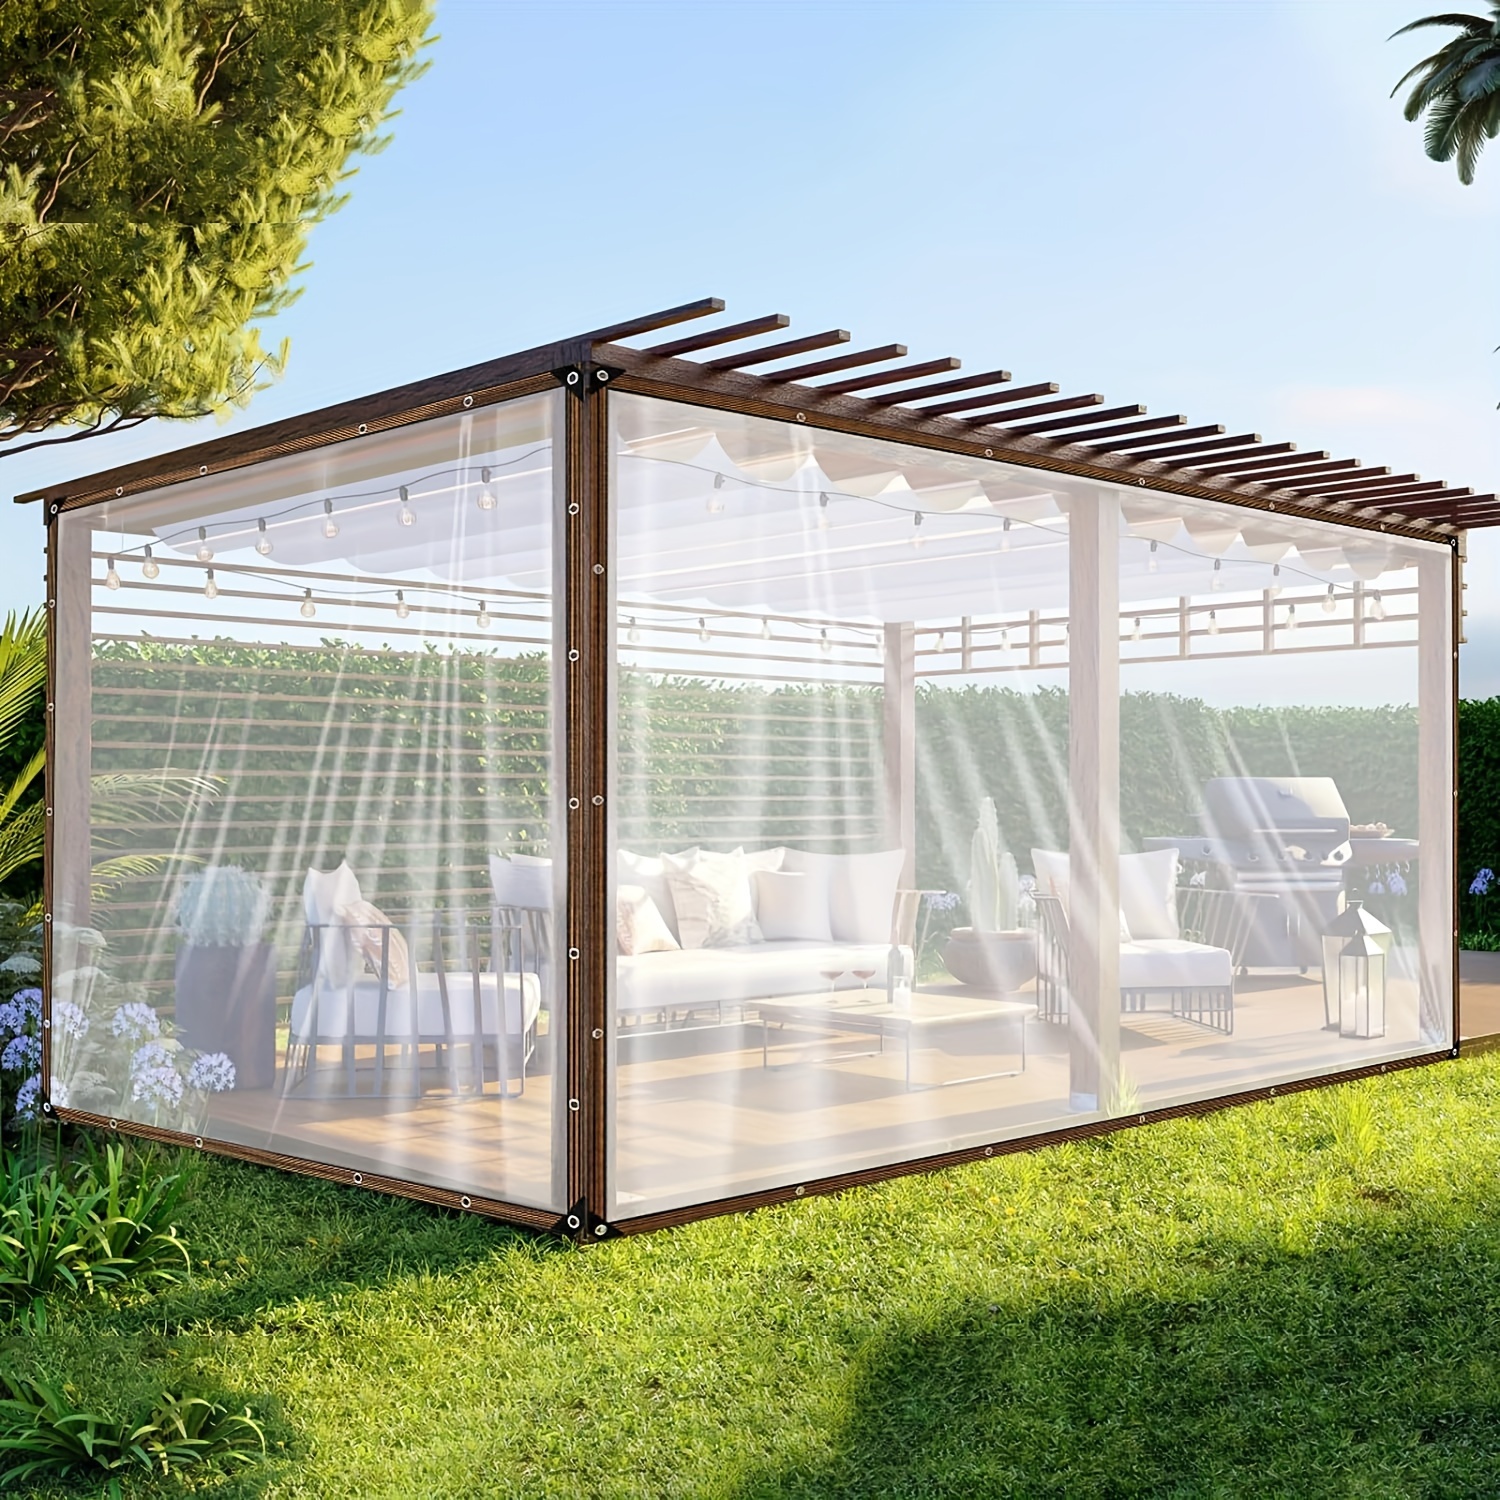 Lona transparente resistente al agua de 4 x 6 pies, lona impermeable  transparente con ojales de 15.74 mil, cubierta impermeable para jardín,  terraza